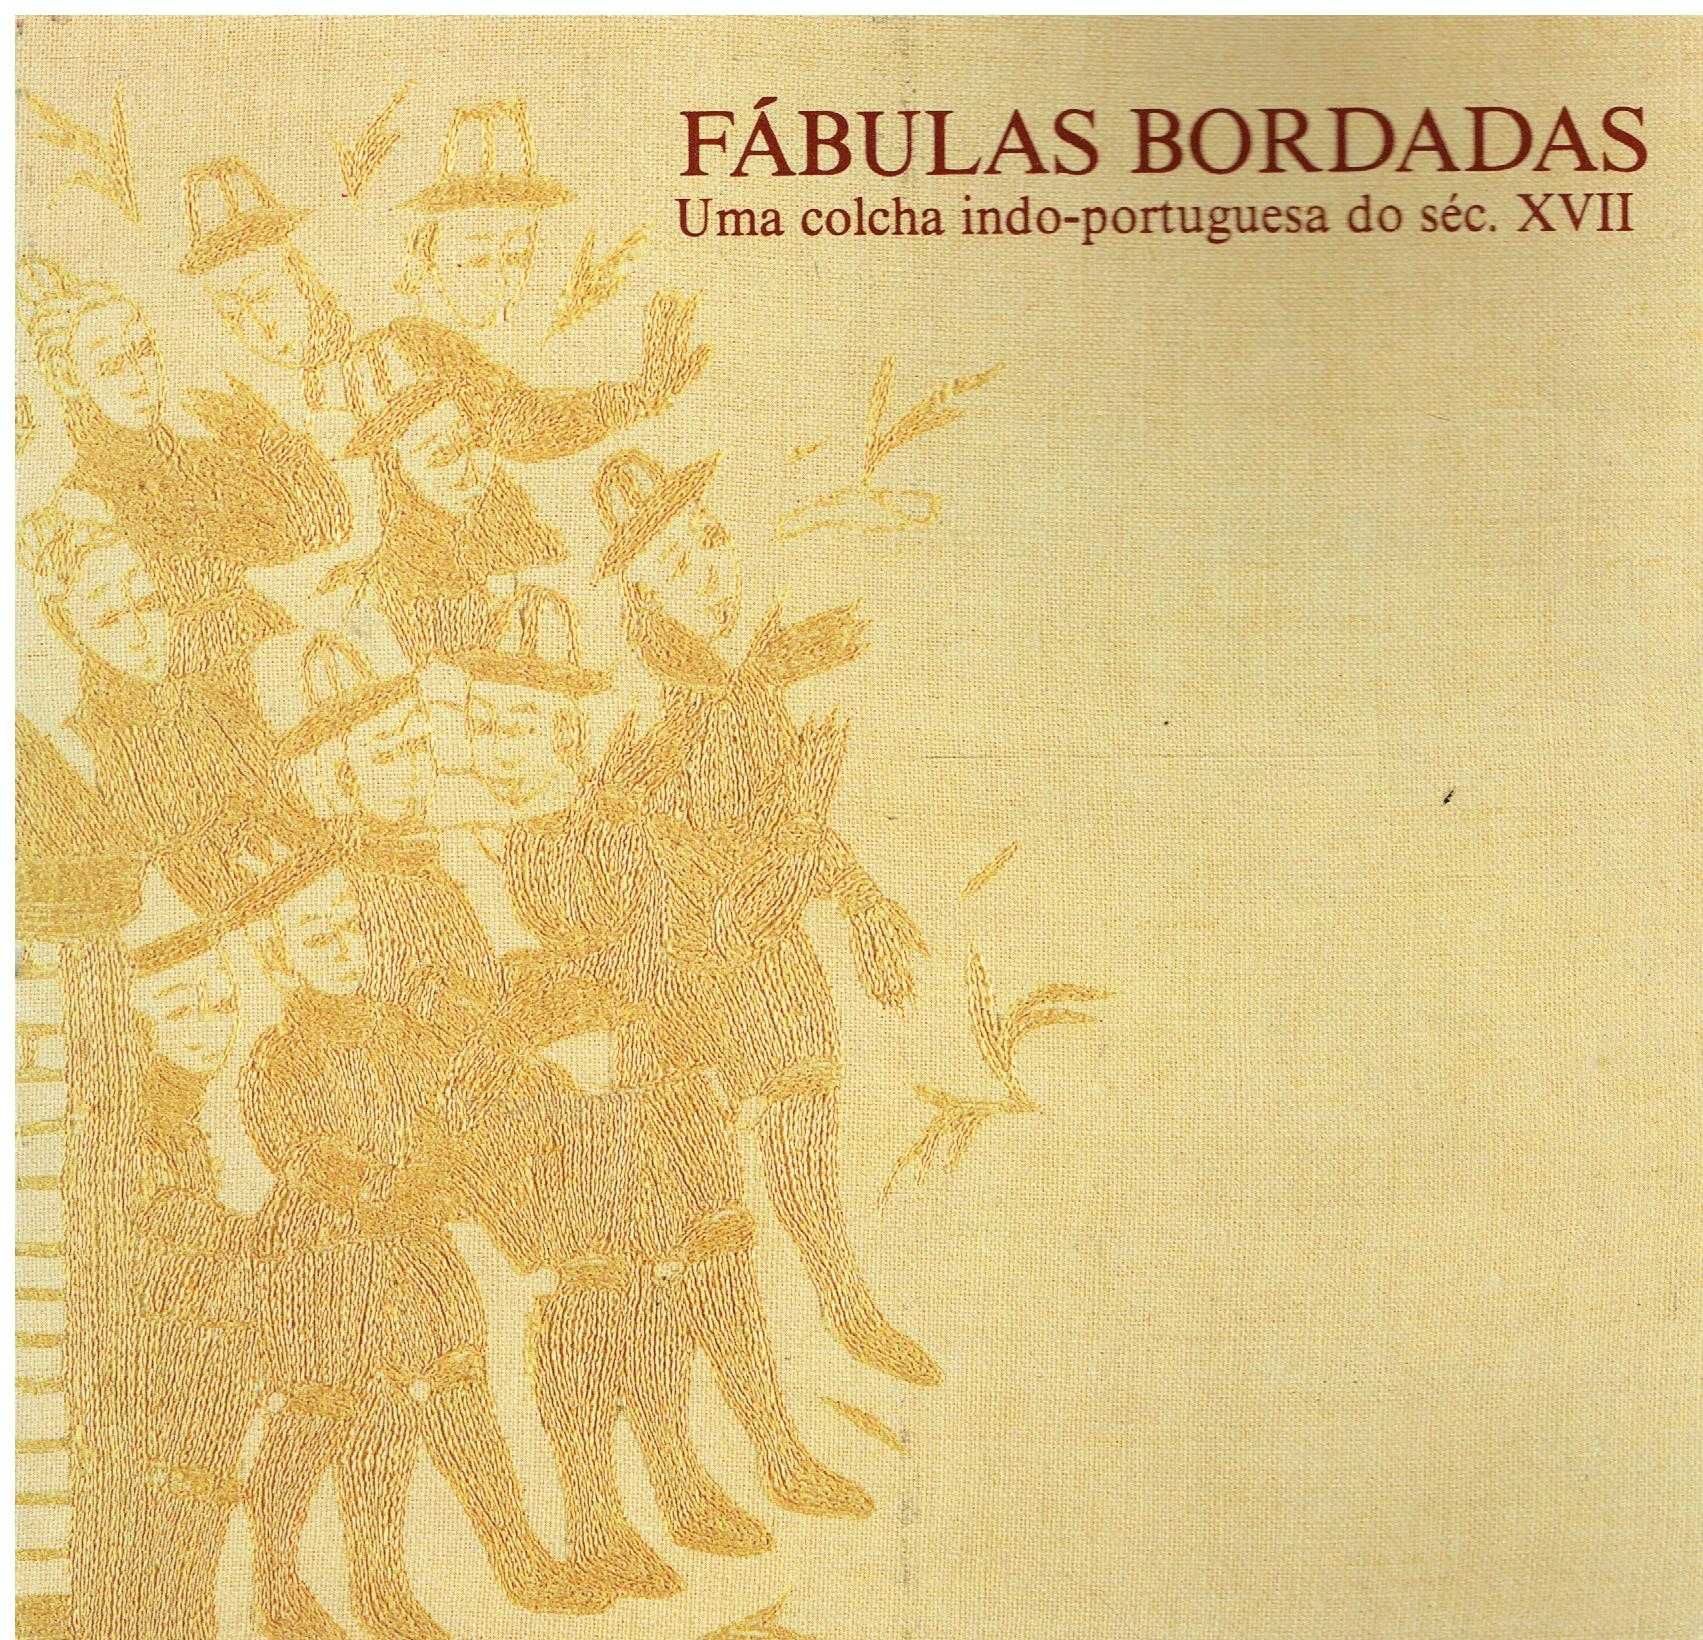 9488

Fábulas bordadas : uma colcha indo-portuguesa do séc. XVII